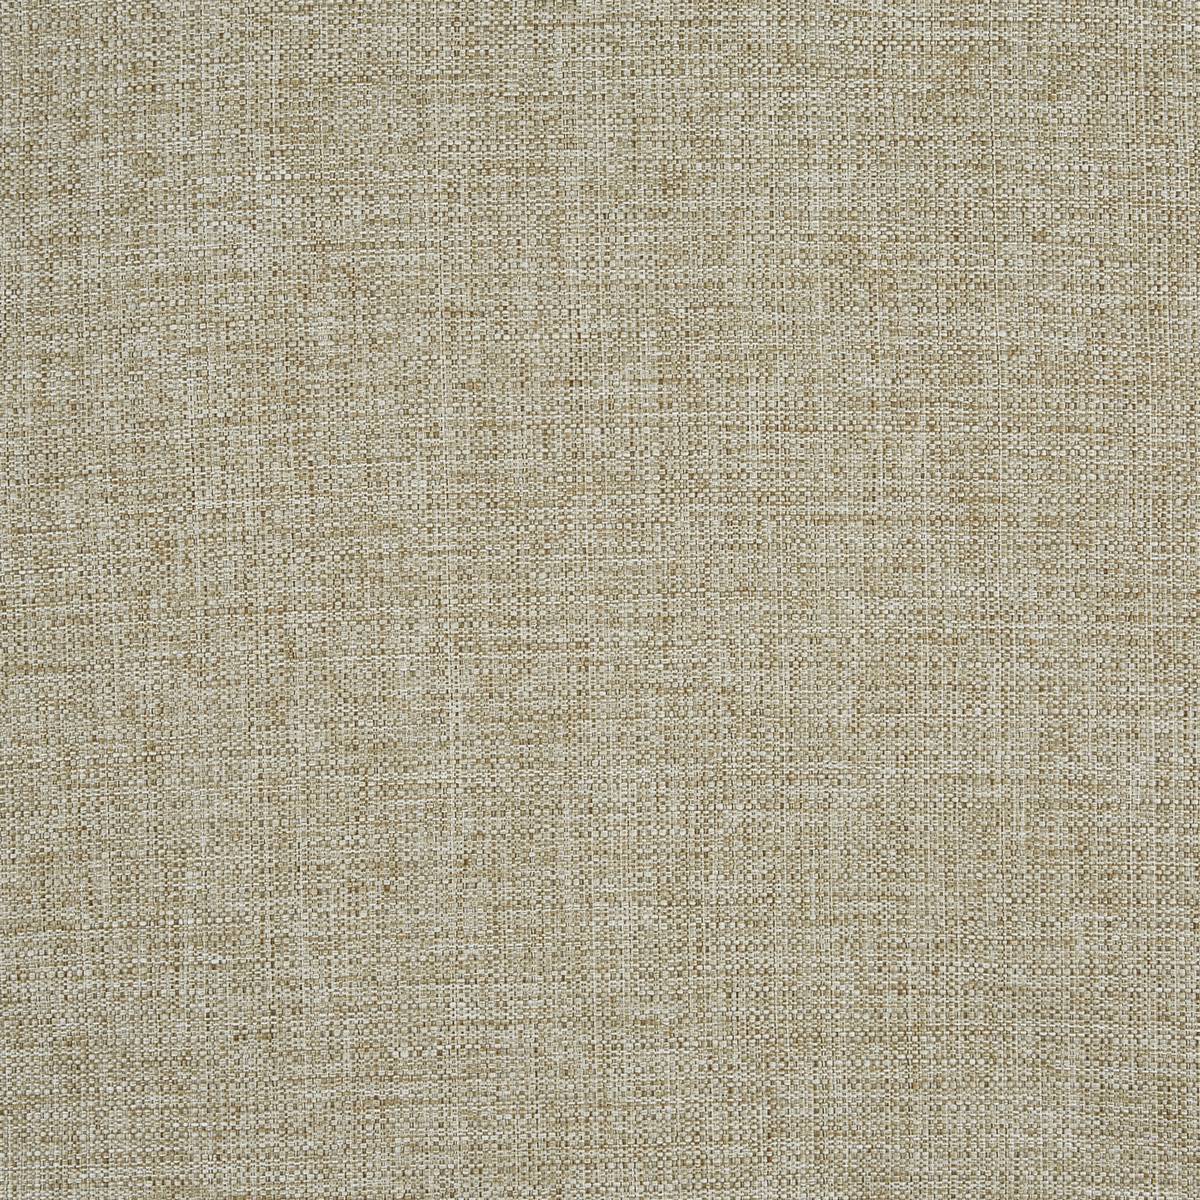 Tweed Barley Fabric by Prestigious Textiles